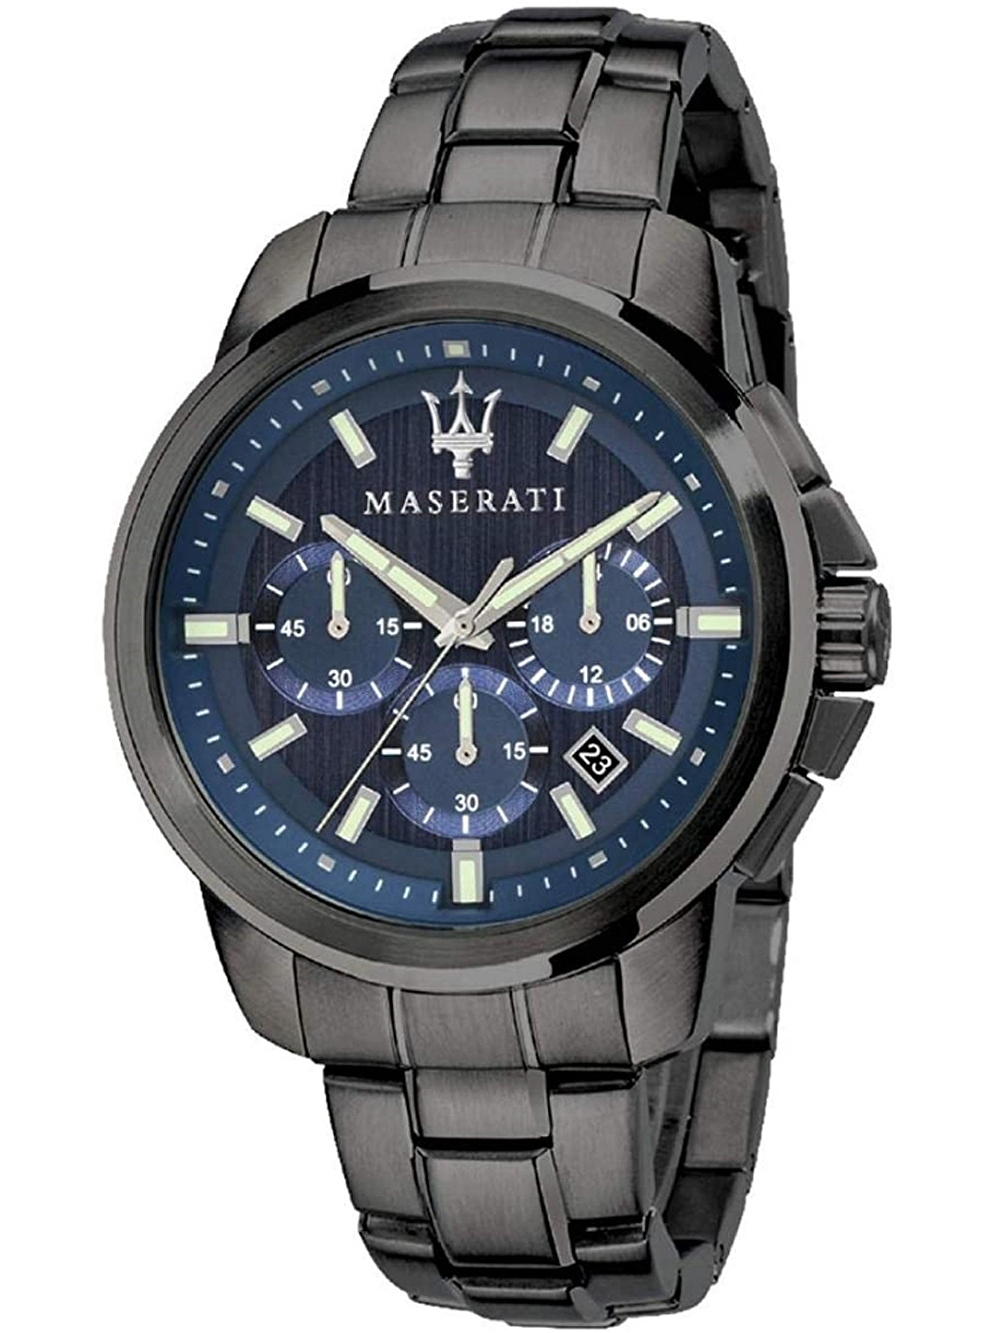 Pánské hodinky Maserati R8873621005 Successo